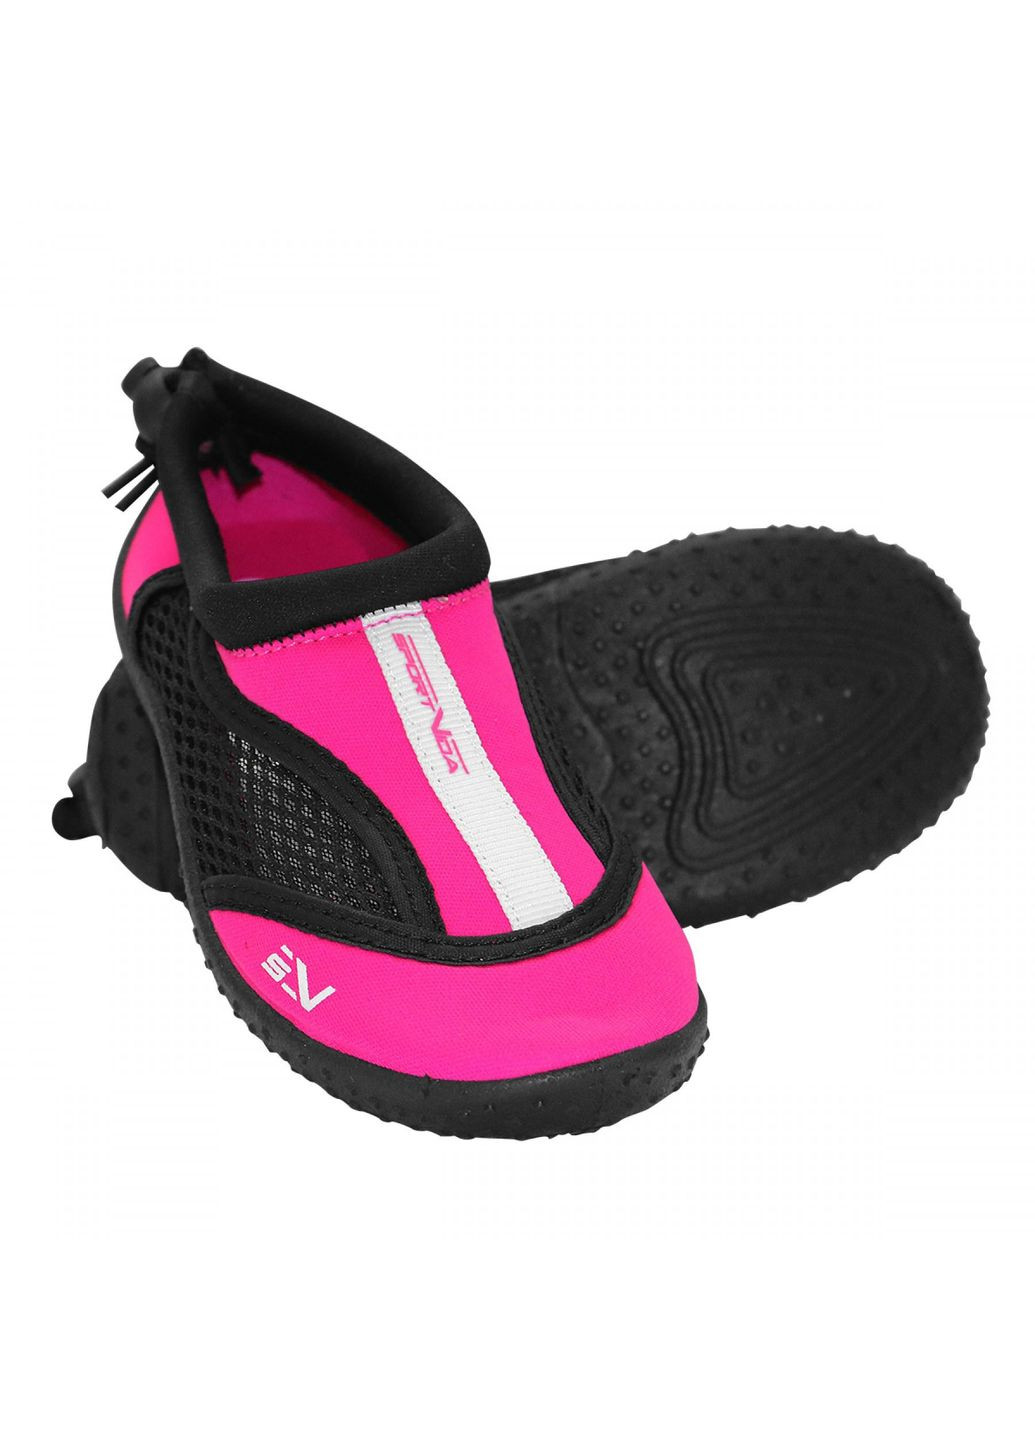 Взуття для пляжу і коралів (аквашузи) SV-GY0001-R34 Size 34 Black/Pink SportVida (293484818)